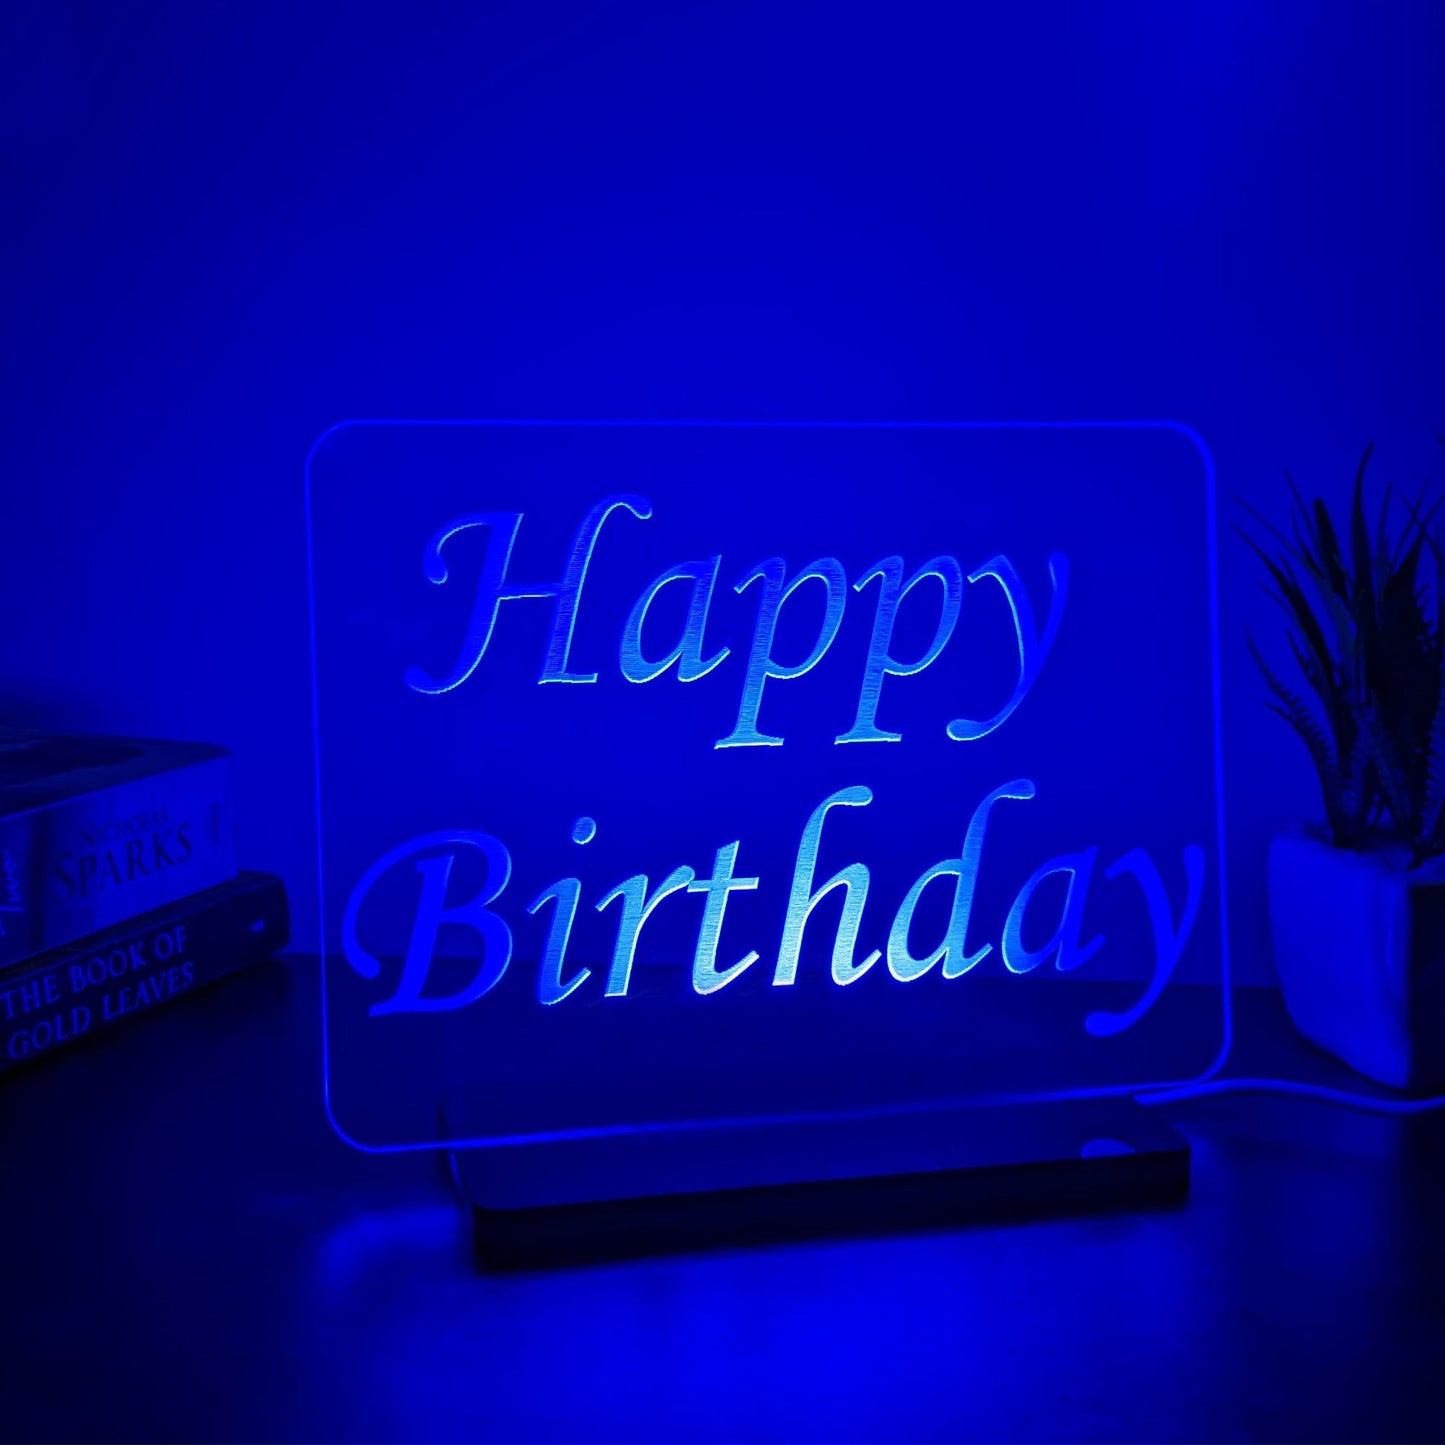 3D LED Acrylic Lamp - Happy Birthday